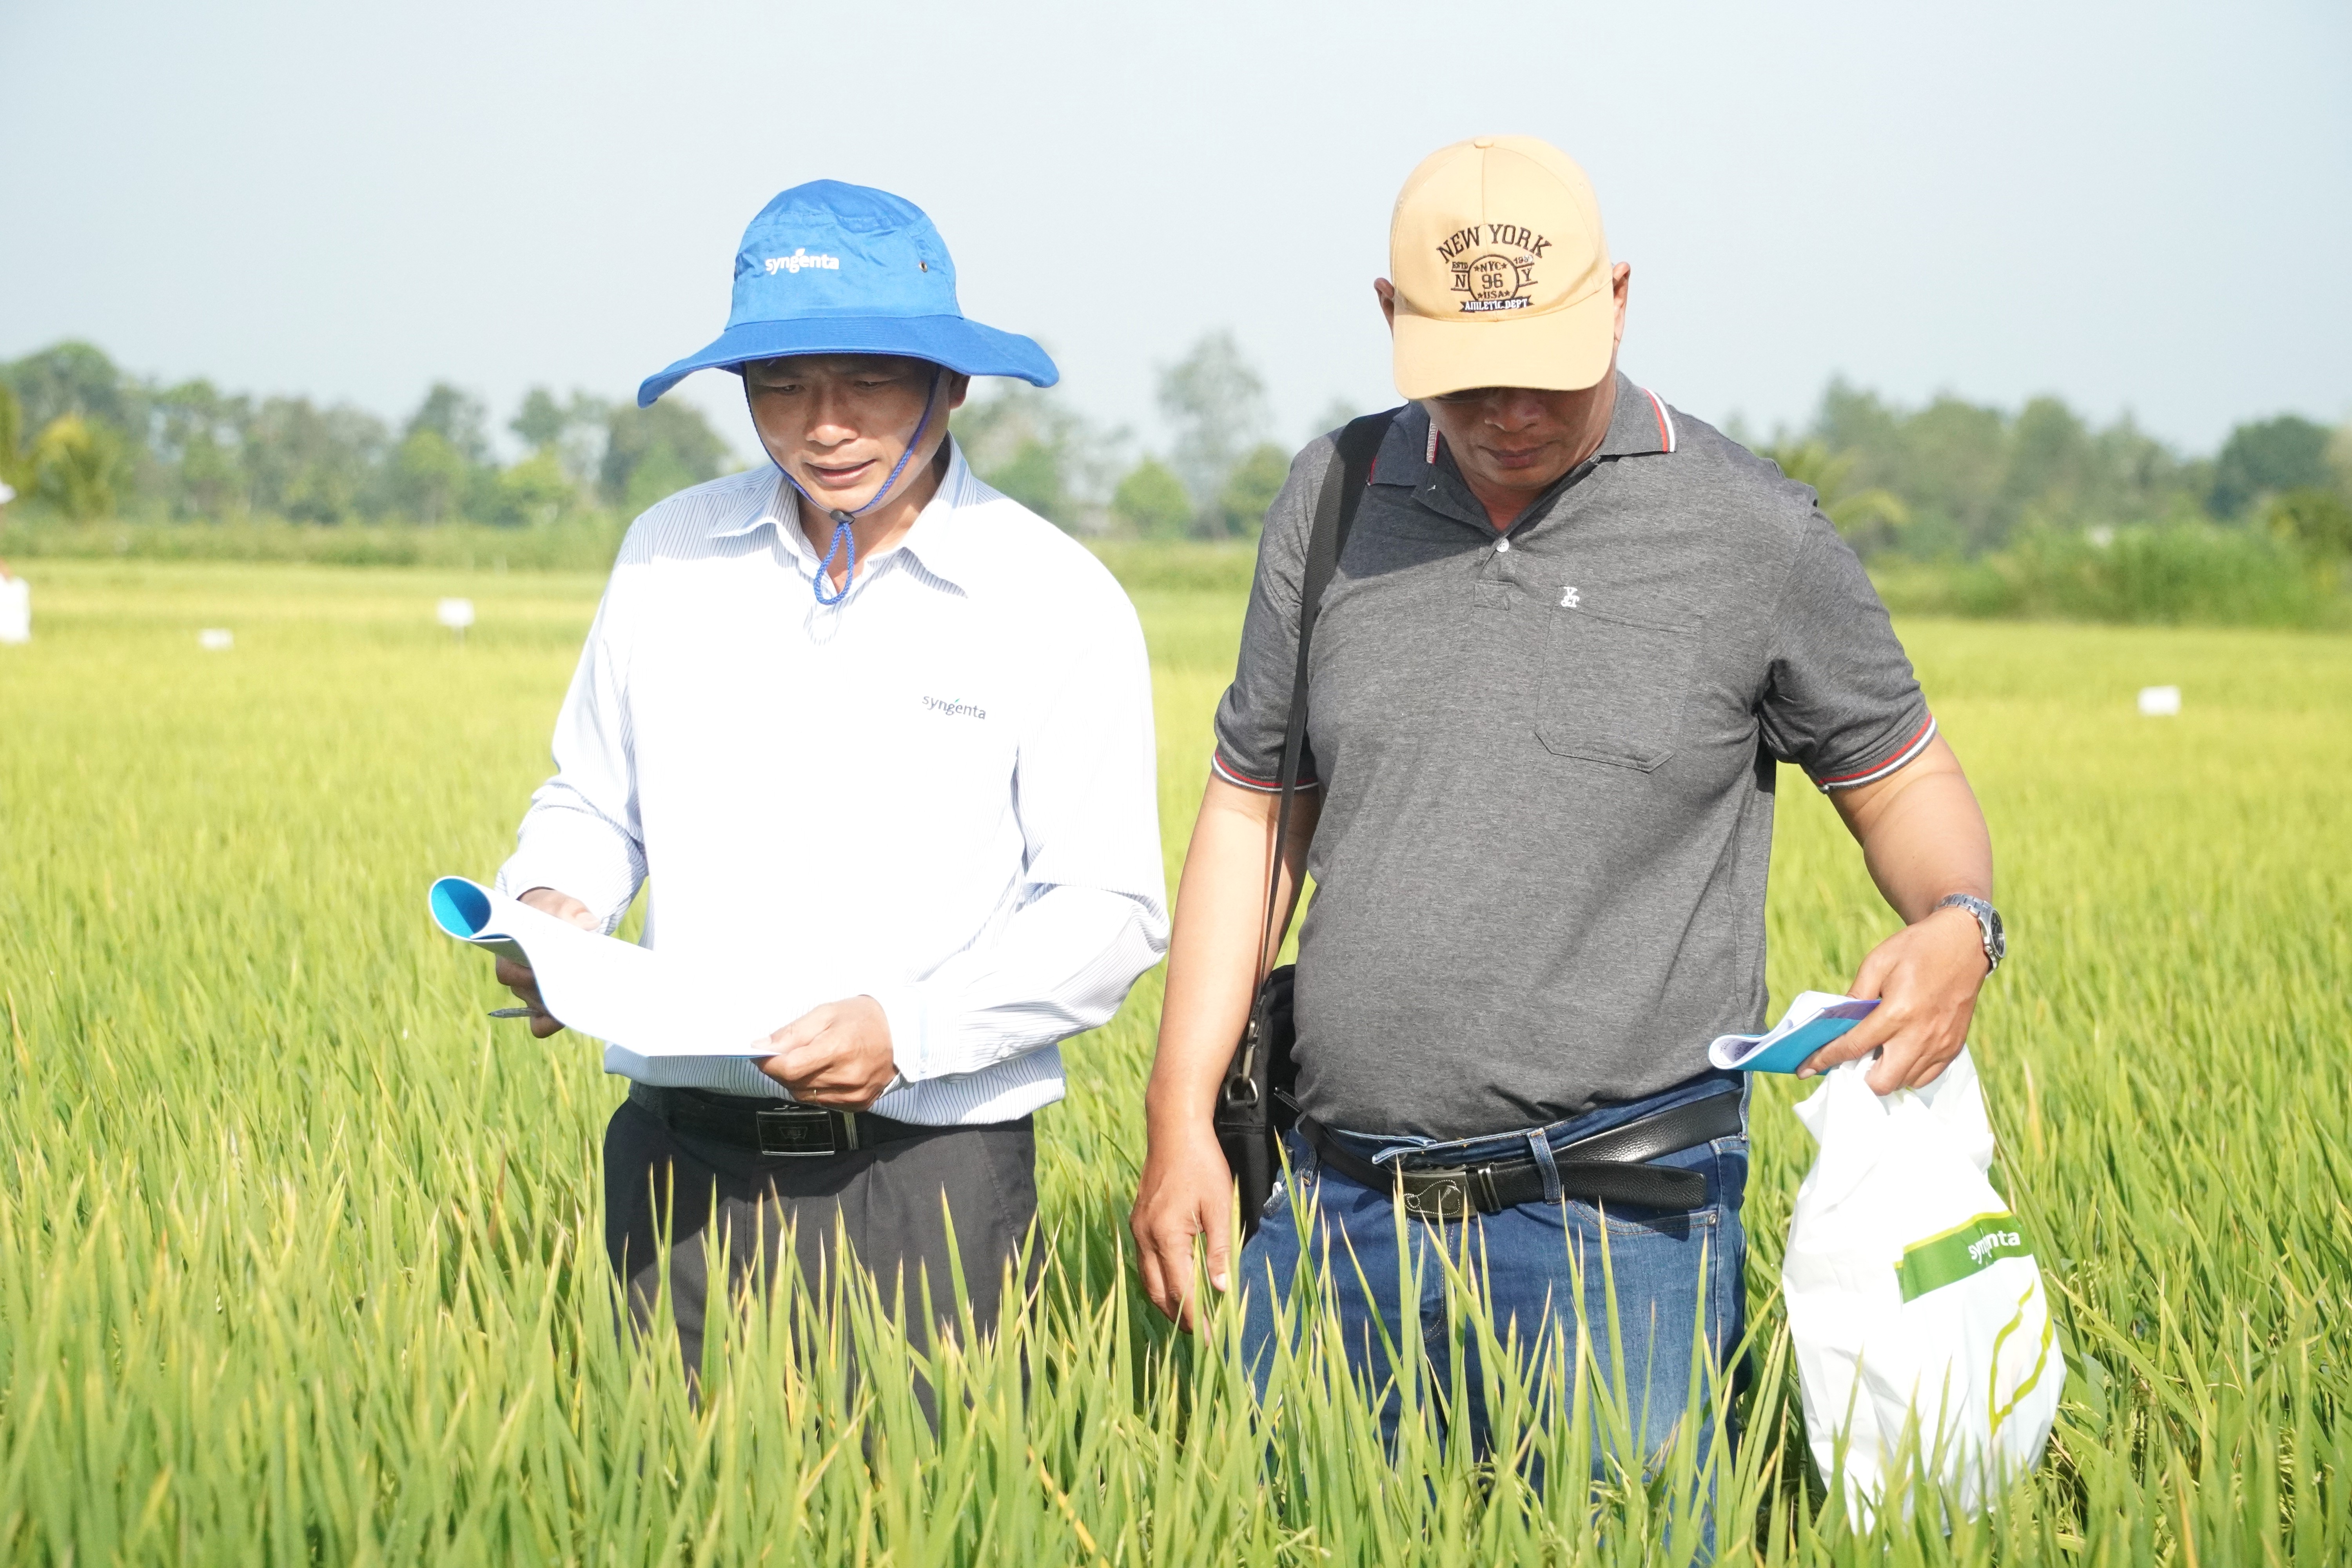 Hàng năm, Viện Lúa ĐBSCL tiến hành khảo nghiệm và trình diễn các giống lúa mới với mục tiêu chọn được những giống lúa mới có đặc tính vượt trội để bổ sung vào cơ cấu sản xuất lúa của vùng. Ảnh: Kim Anh.